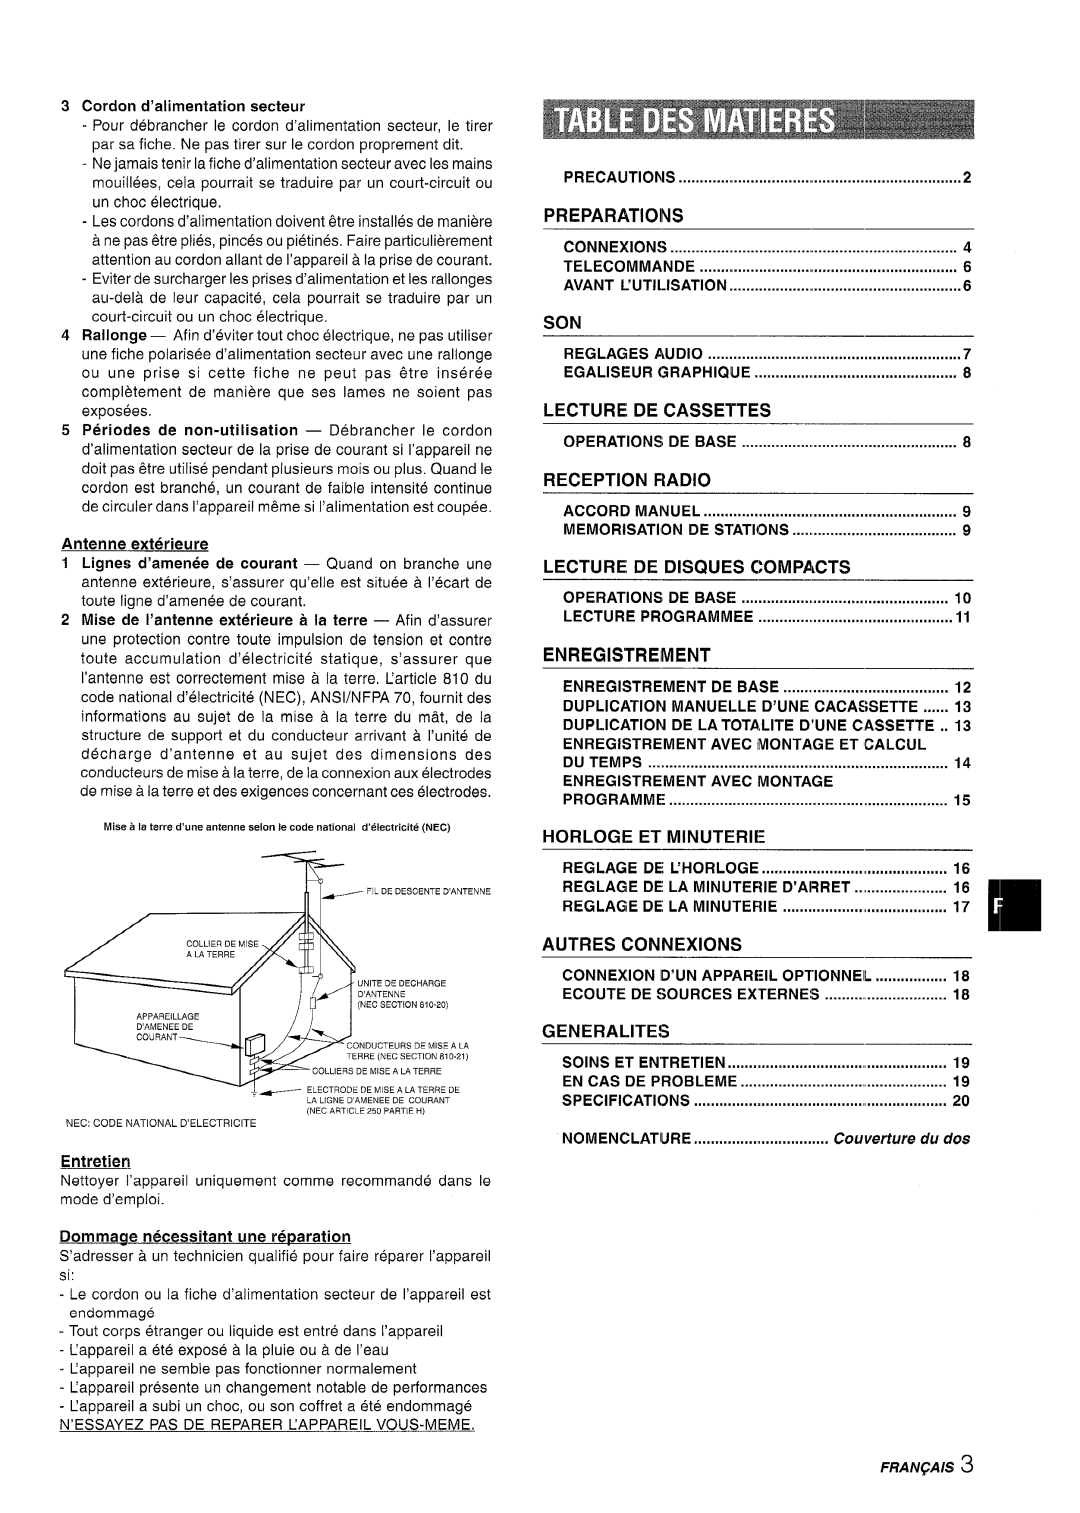 Aiwa CX-NA222 manual Son, Egaliseur Graphiqlje, Operations DE Base, Memorisation DE Stations, Reglage DE LA Minuterie 